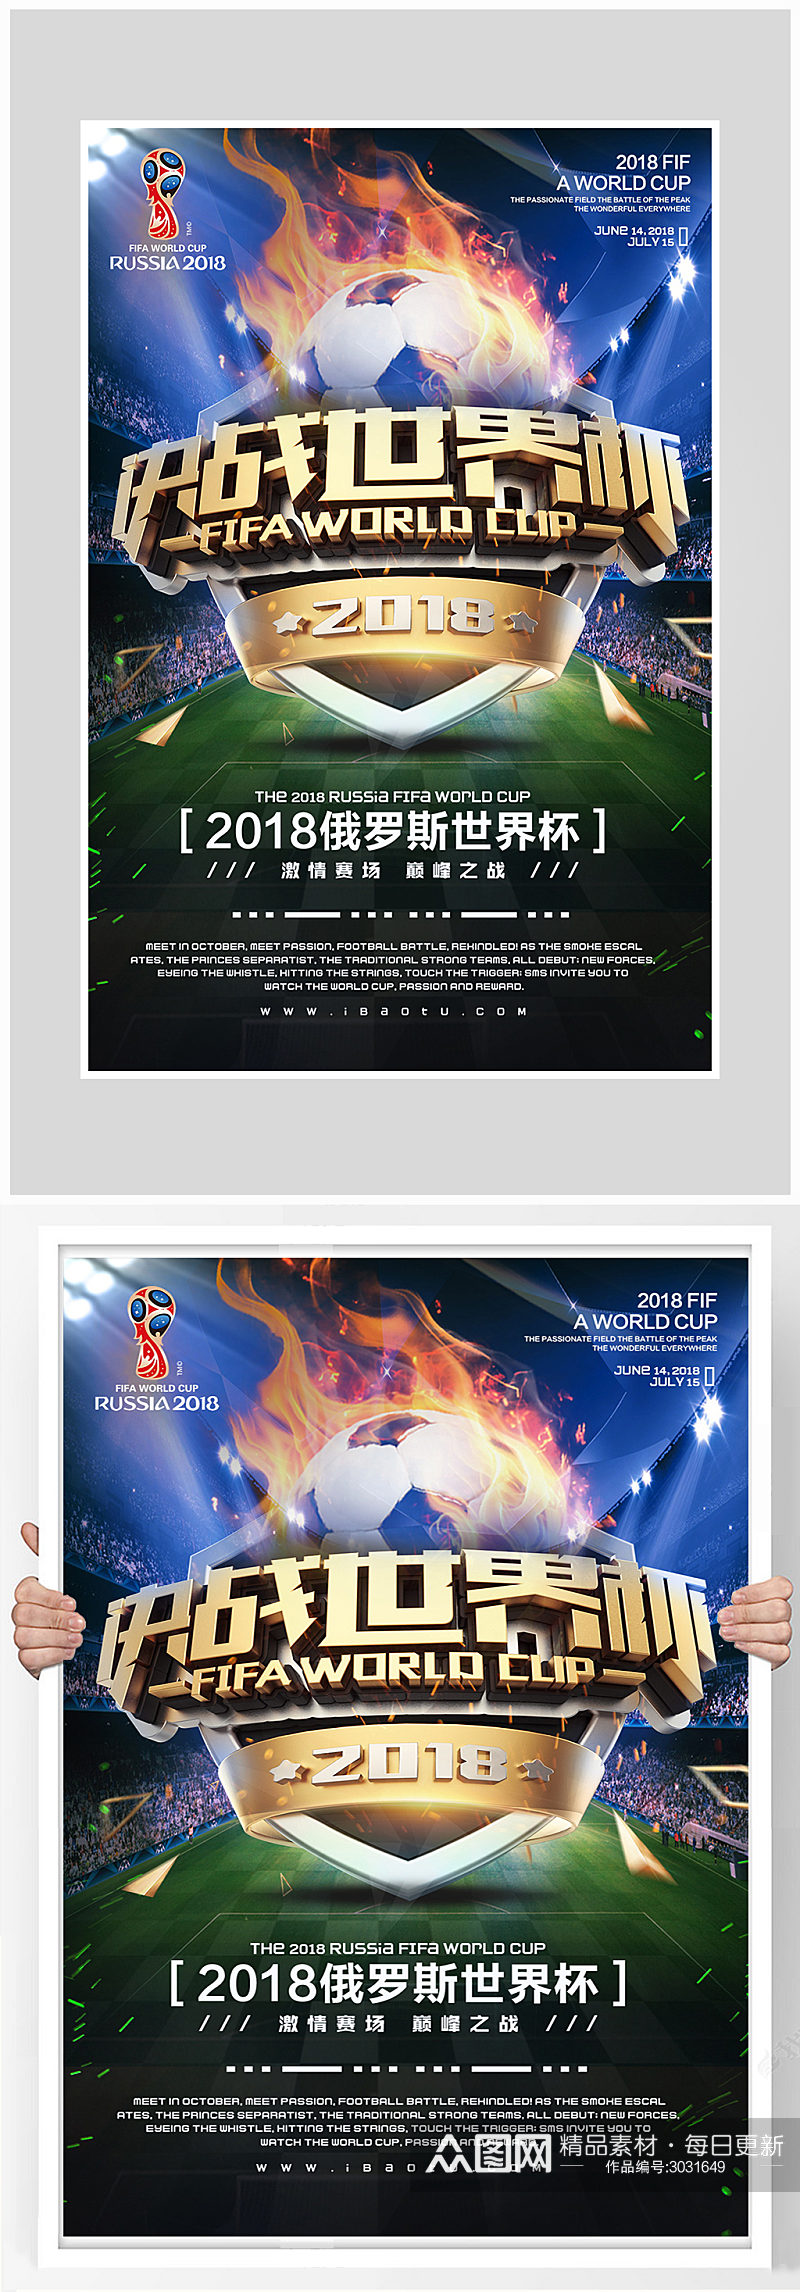 大气世界杯足球比赛海报设计素材